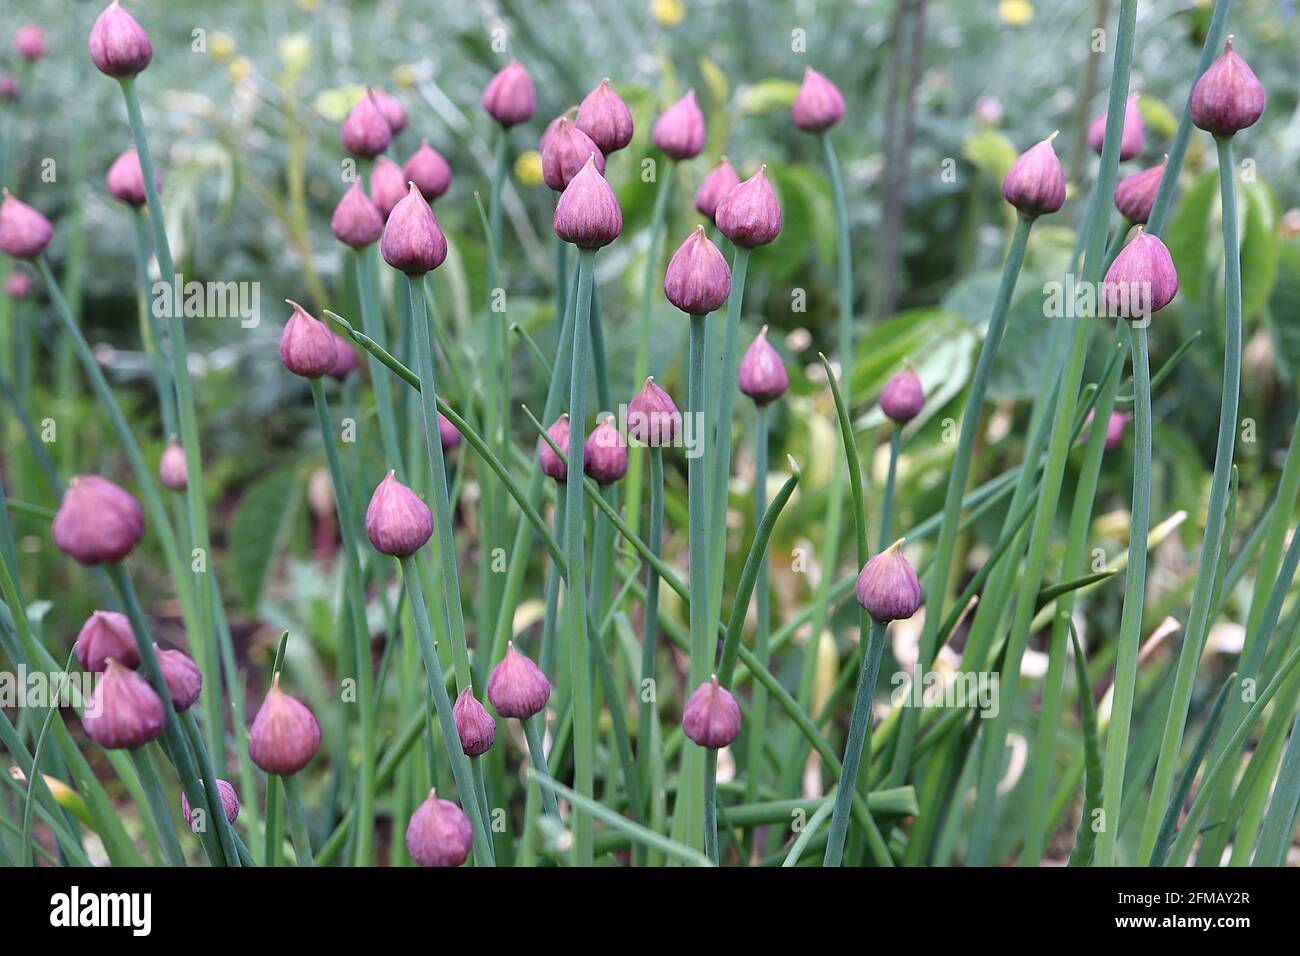 Allium schoenoprasum Buds de fleurs de ciboulette – groupe de petits bourgeons de fleurs violettes en forme de dôme d'oignon, mai, Angleterre, Royaume-Uni Banque D'Images